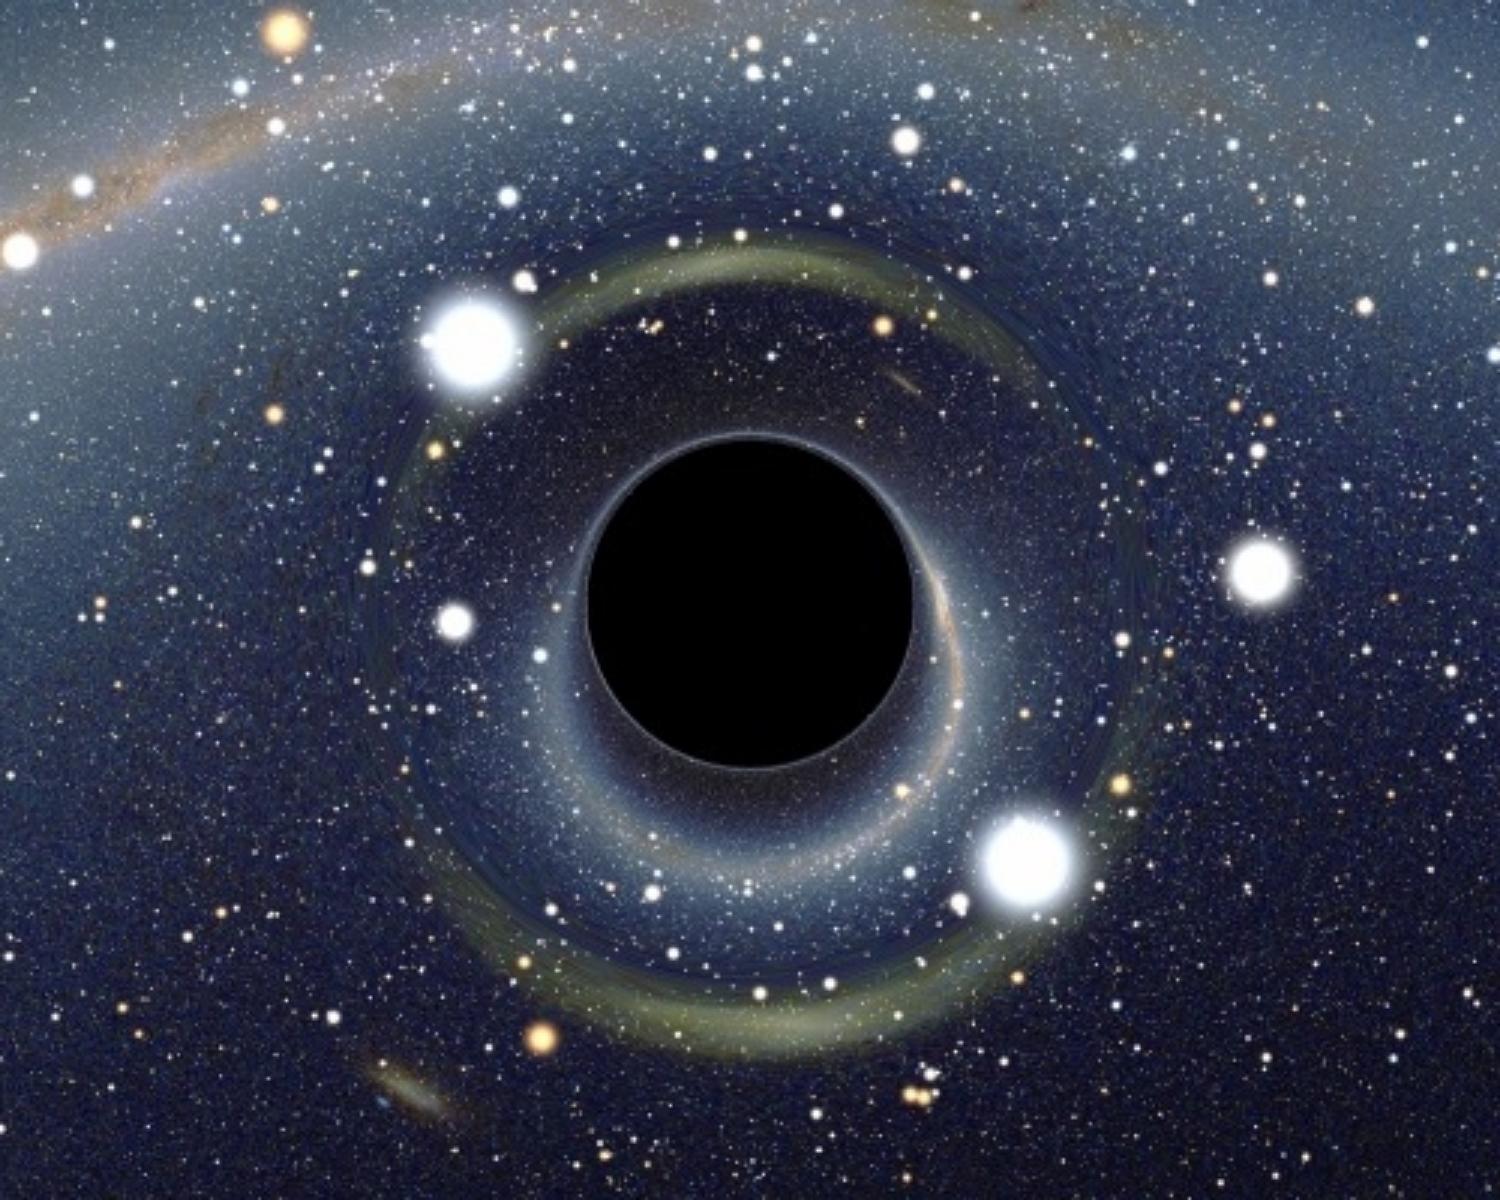 How Do Black Holes Form?